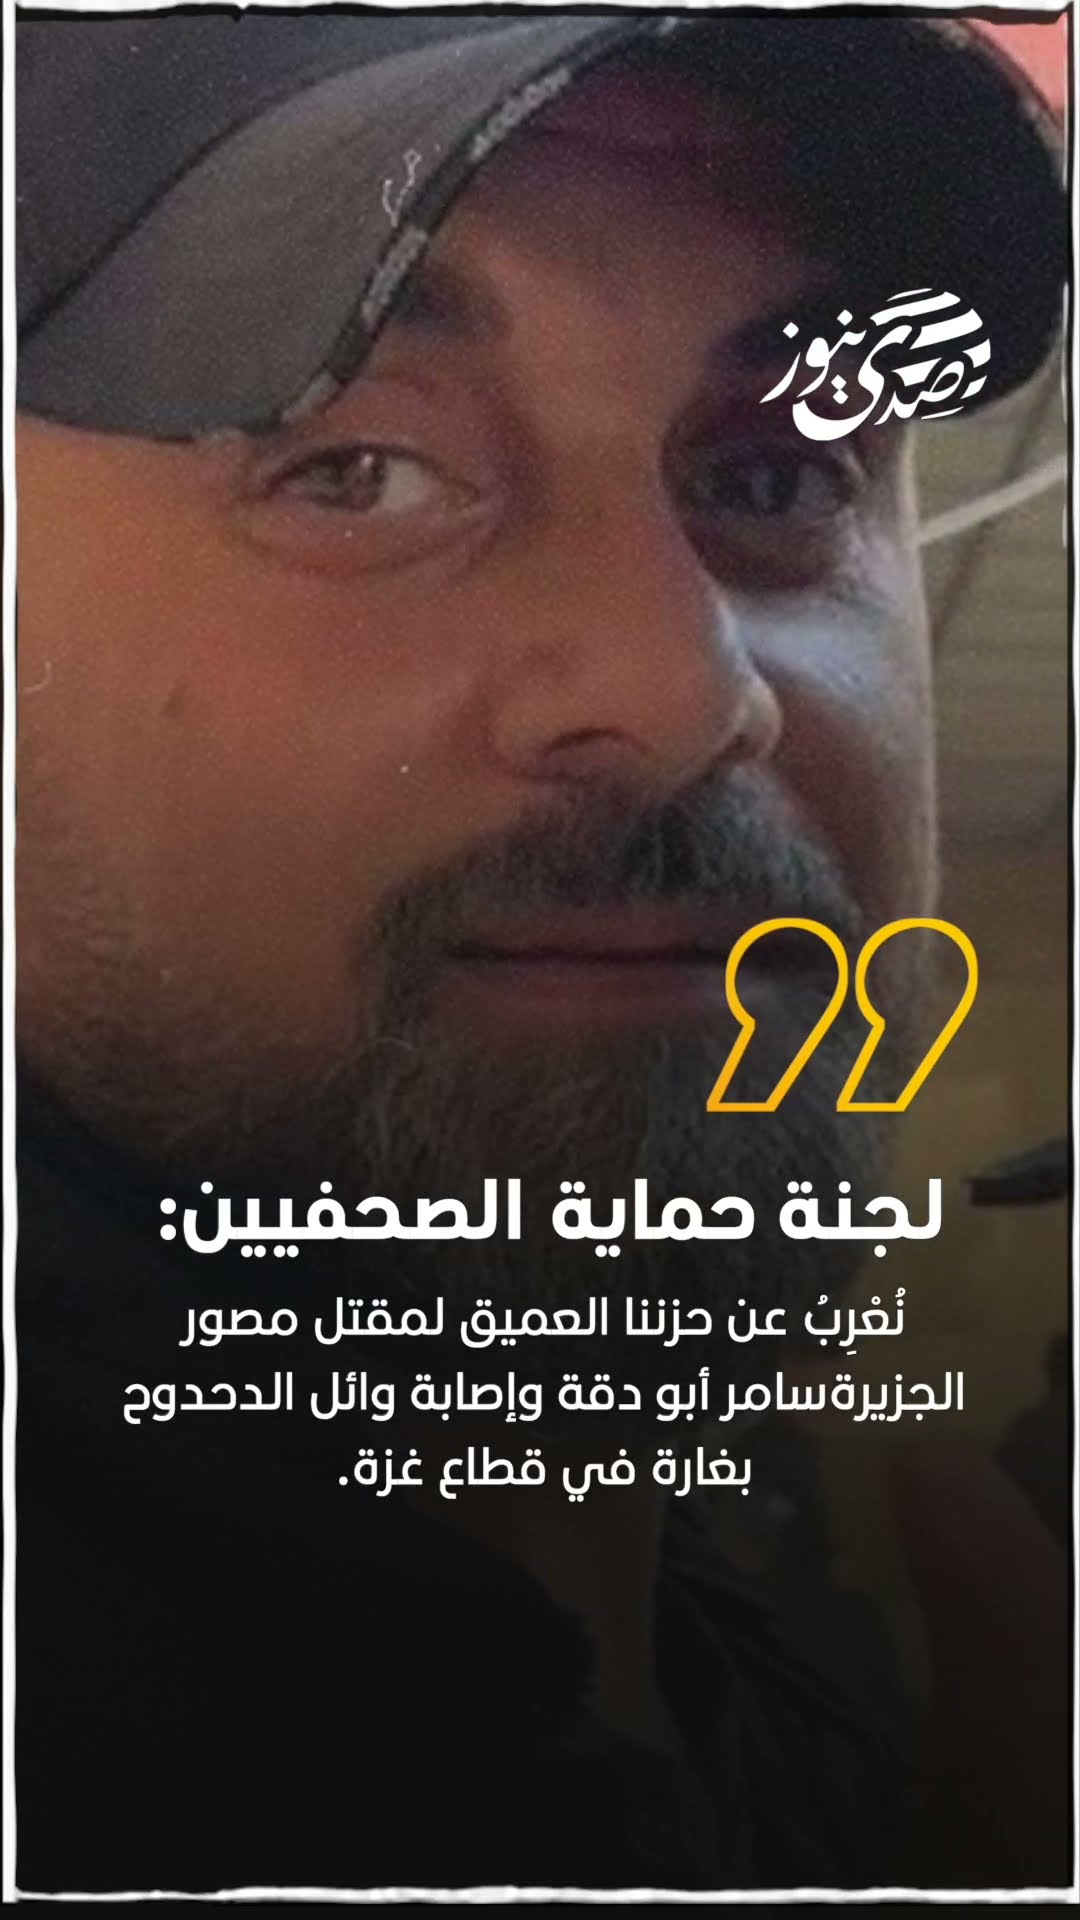 صدى نيوز |  لجنة حماية الصحفيين: نُعْرِبُ عن حزننا العميق لمقتل مصور الجزيرة سامر أبو دقة